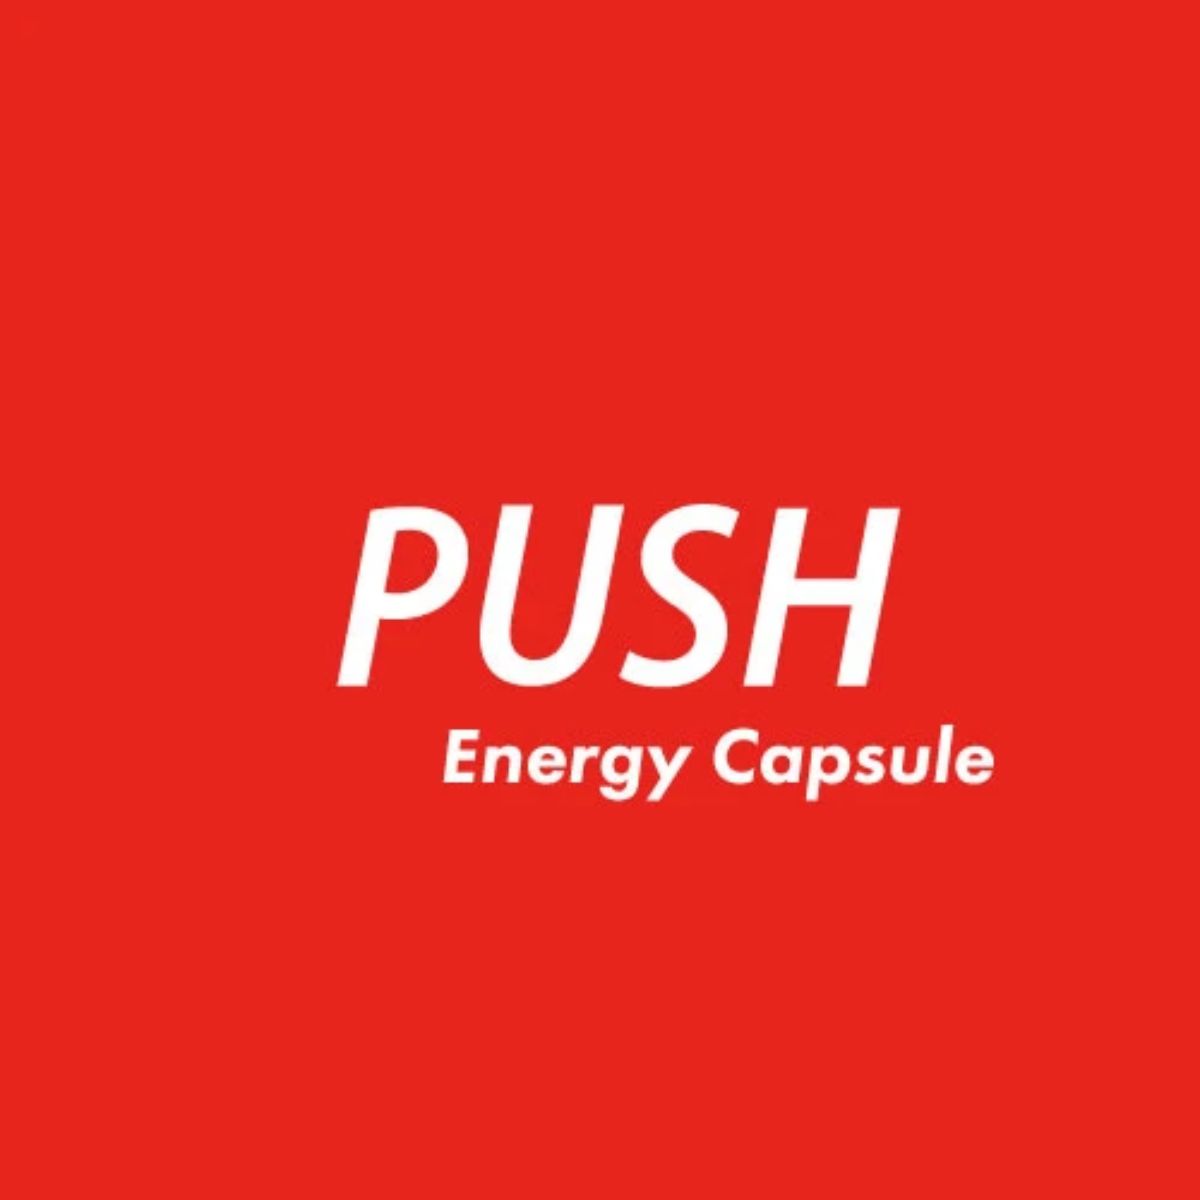 膠囊型能量充電“PUSH”